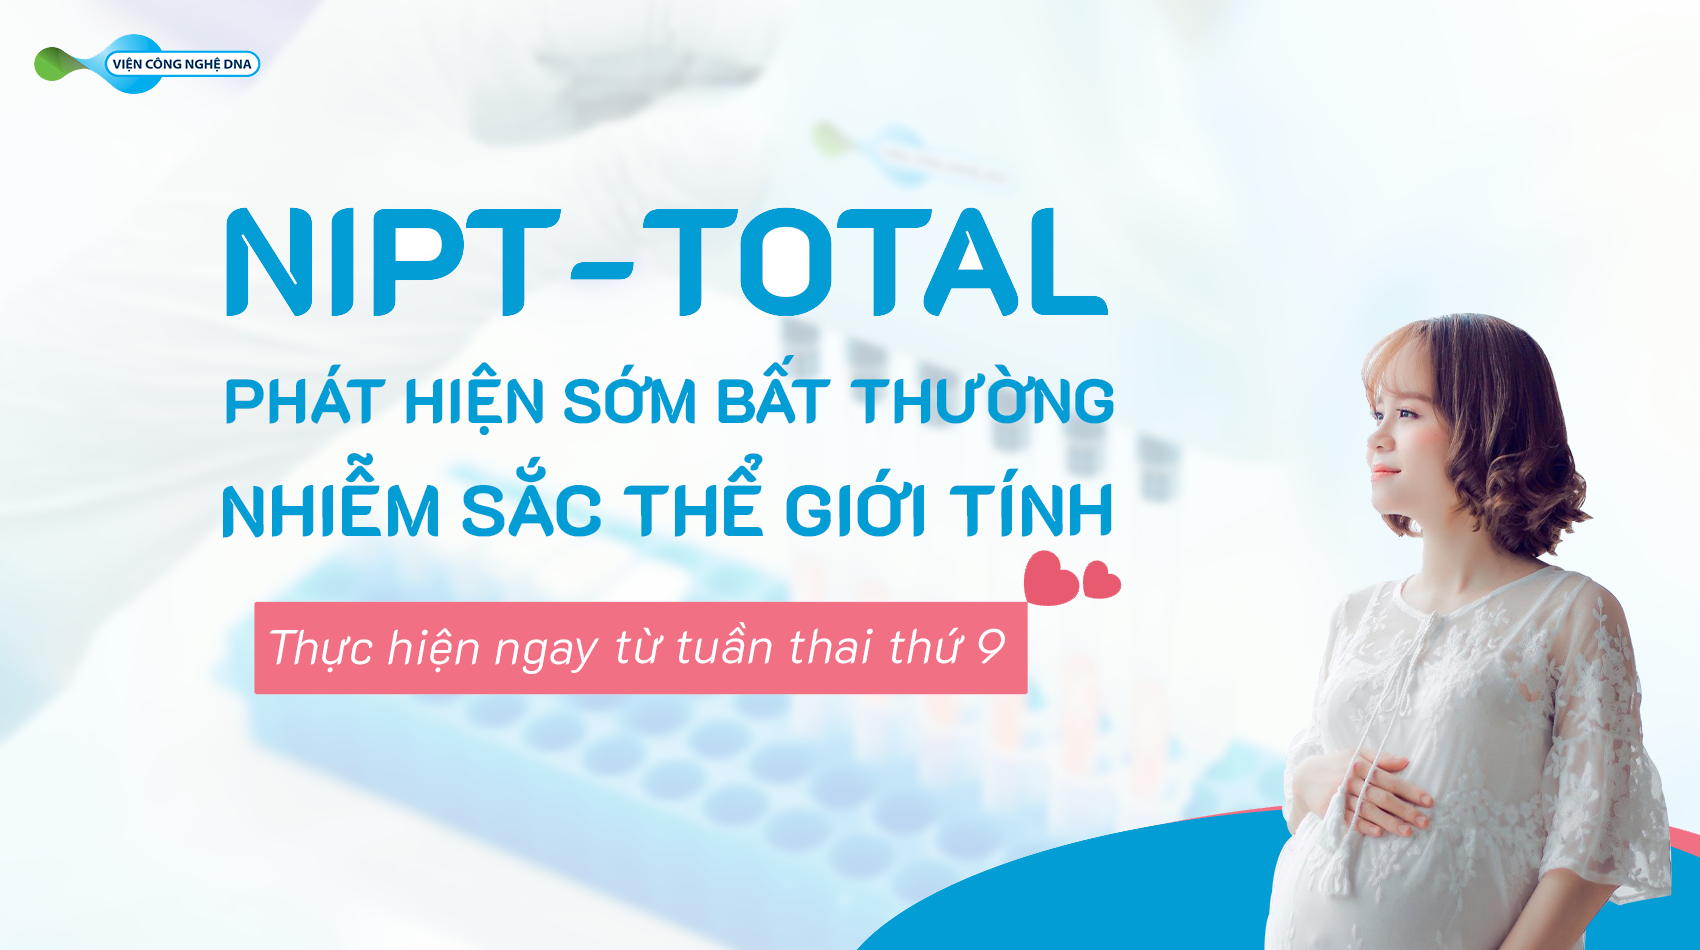 Phat hien som bat thuong nhiem sac the gioi tinh bang xet nghiem NIPT Total 01